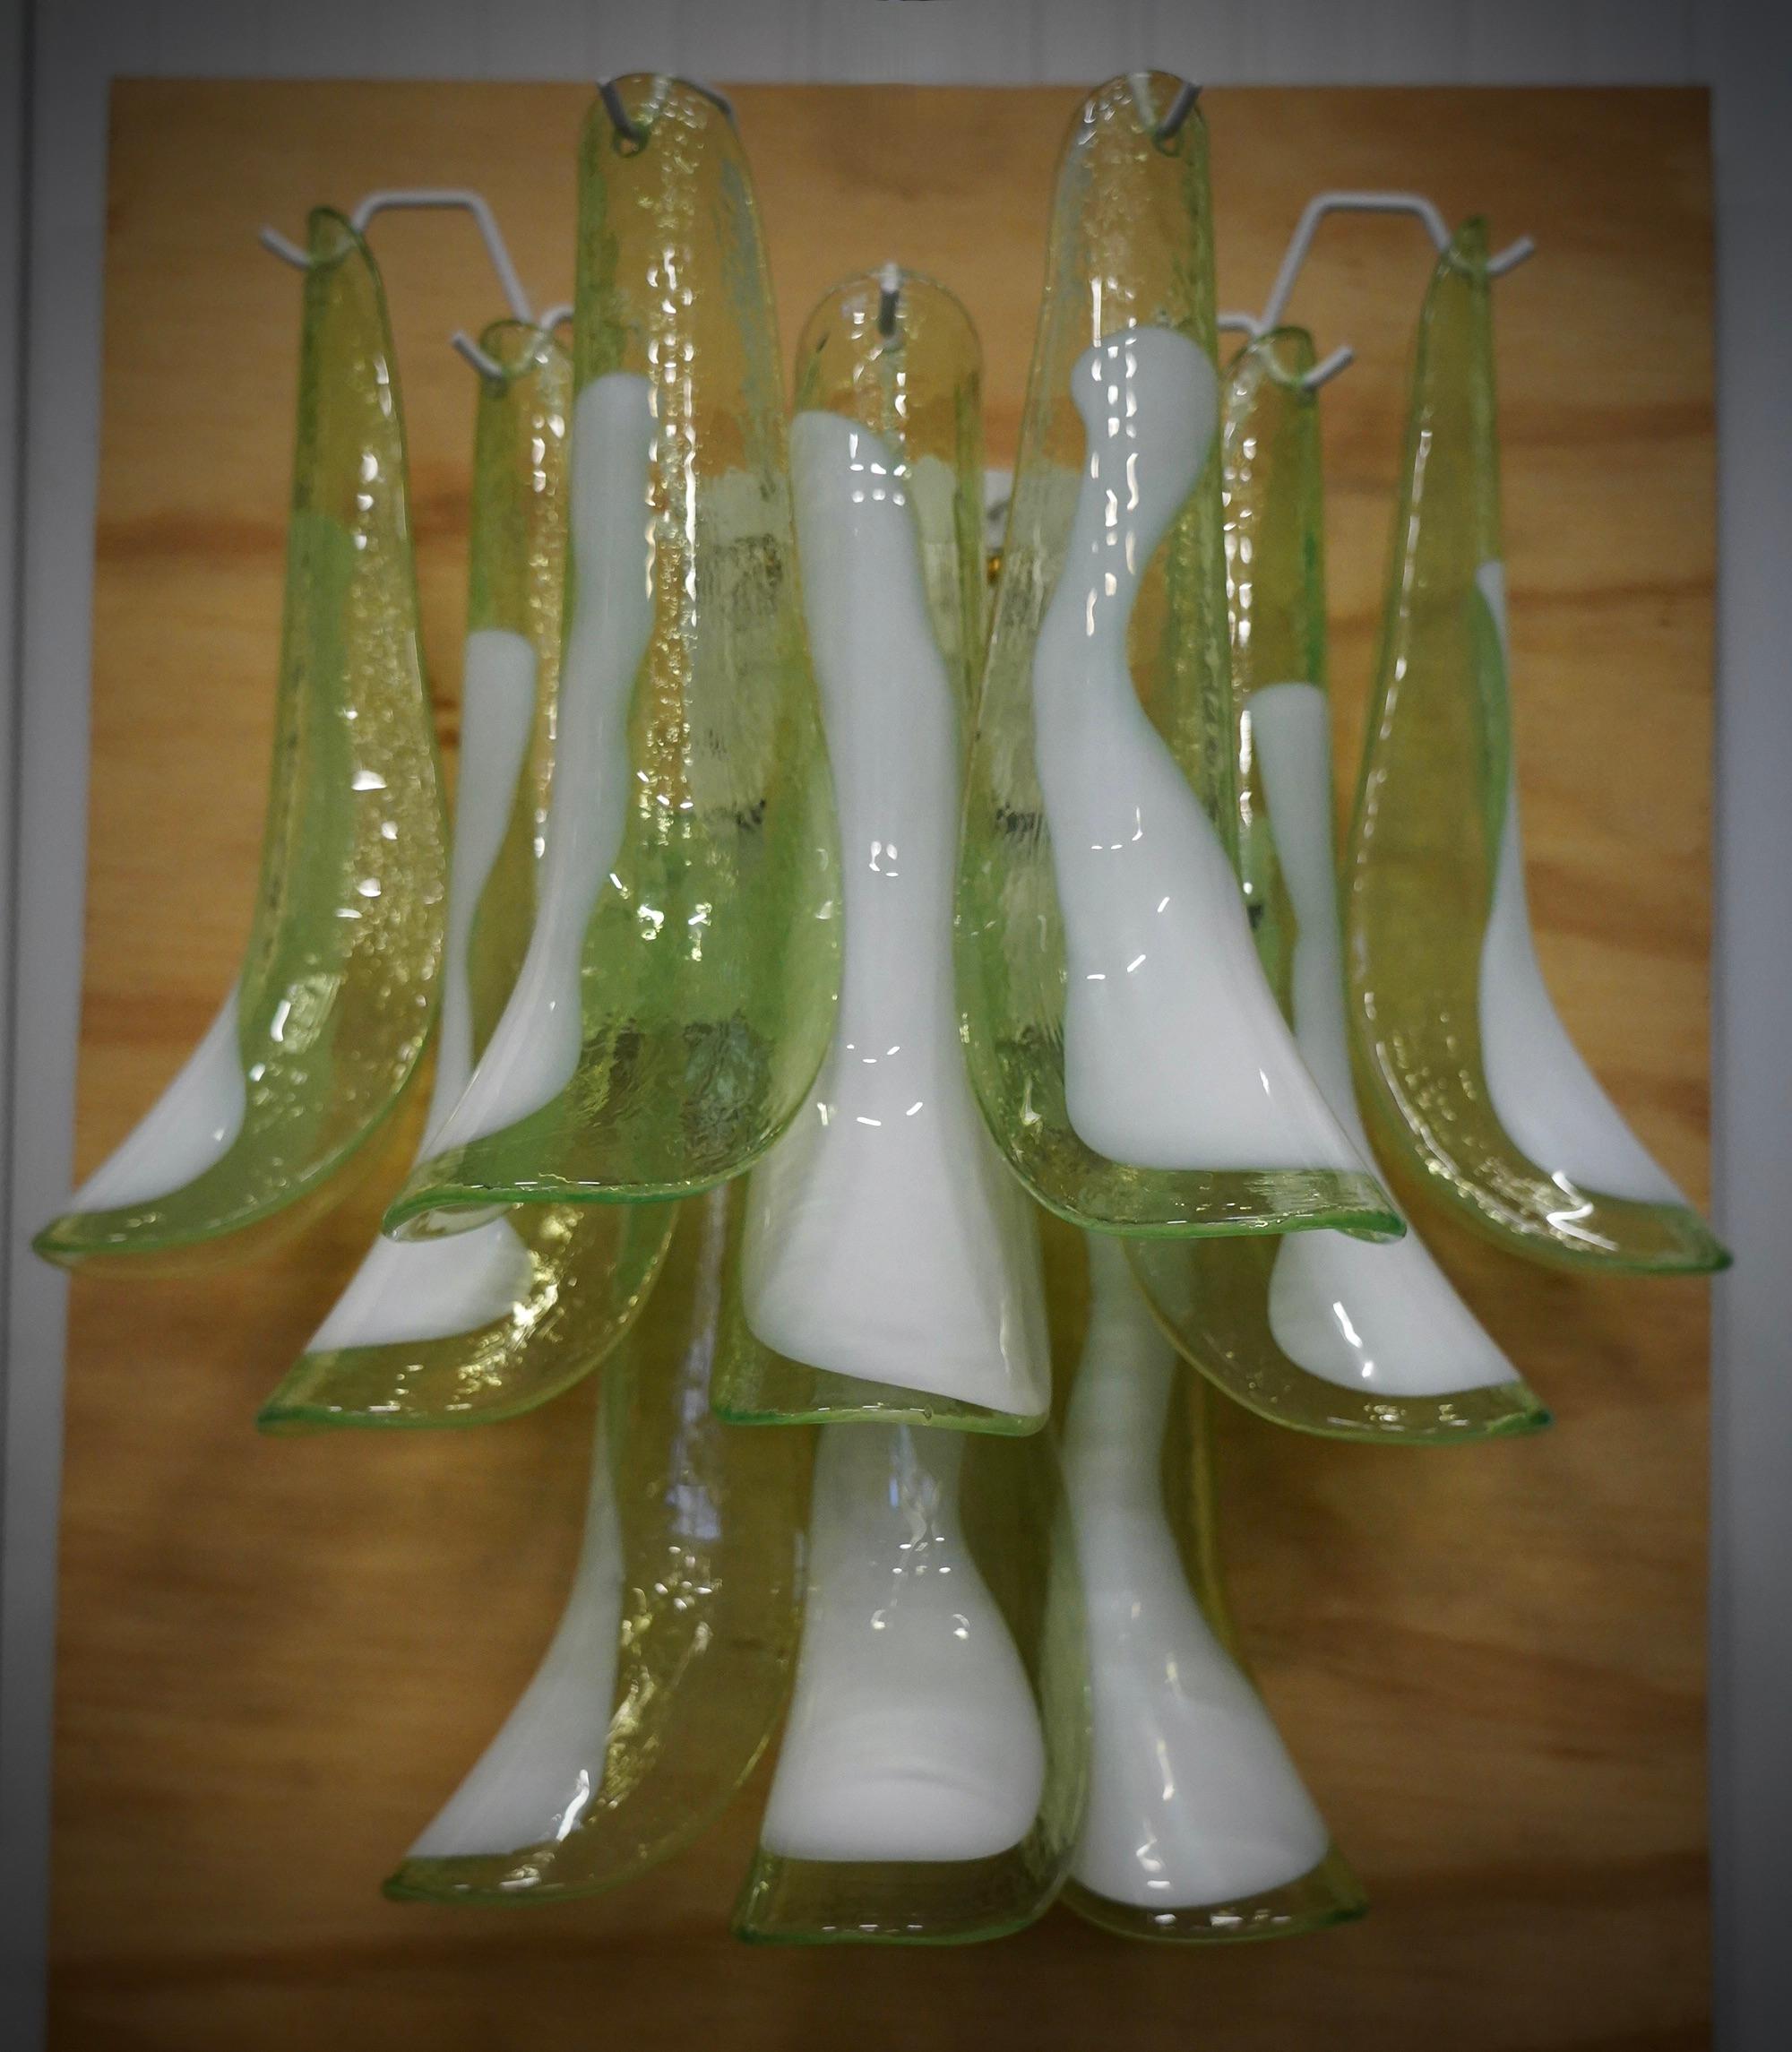 Dix belles feuilles en verre classique de Murano, vertes et blanches. Un design riche pour une applique vraiment magnifique. Simple et élégant comme dans le style d'Eleg.

L'applique est composée d'une série de dix feuilles en verre de Murano blanc